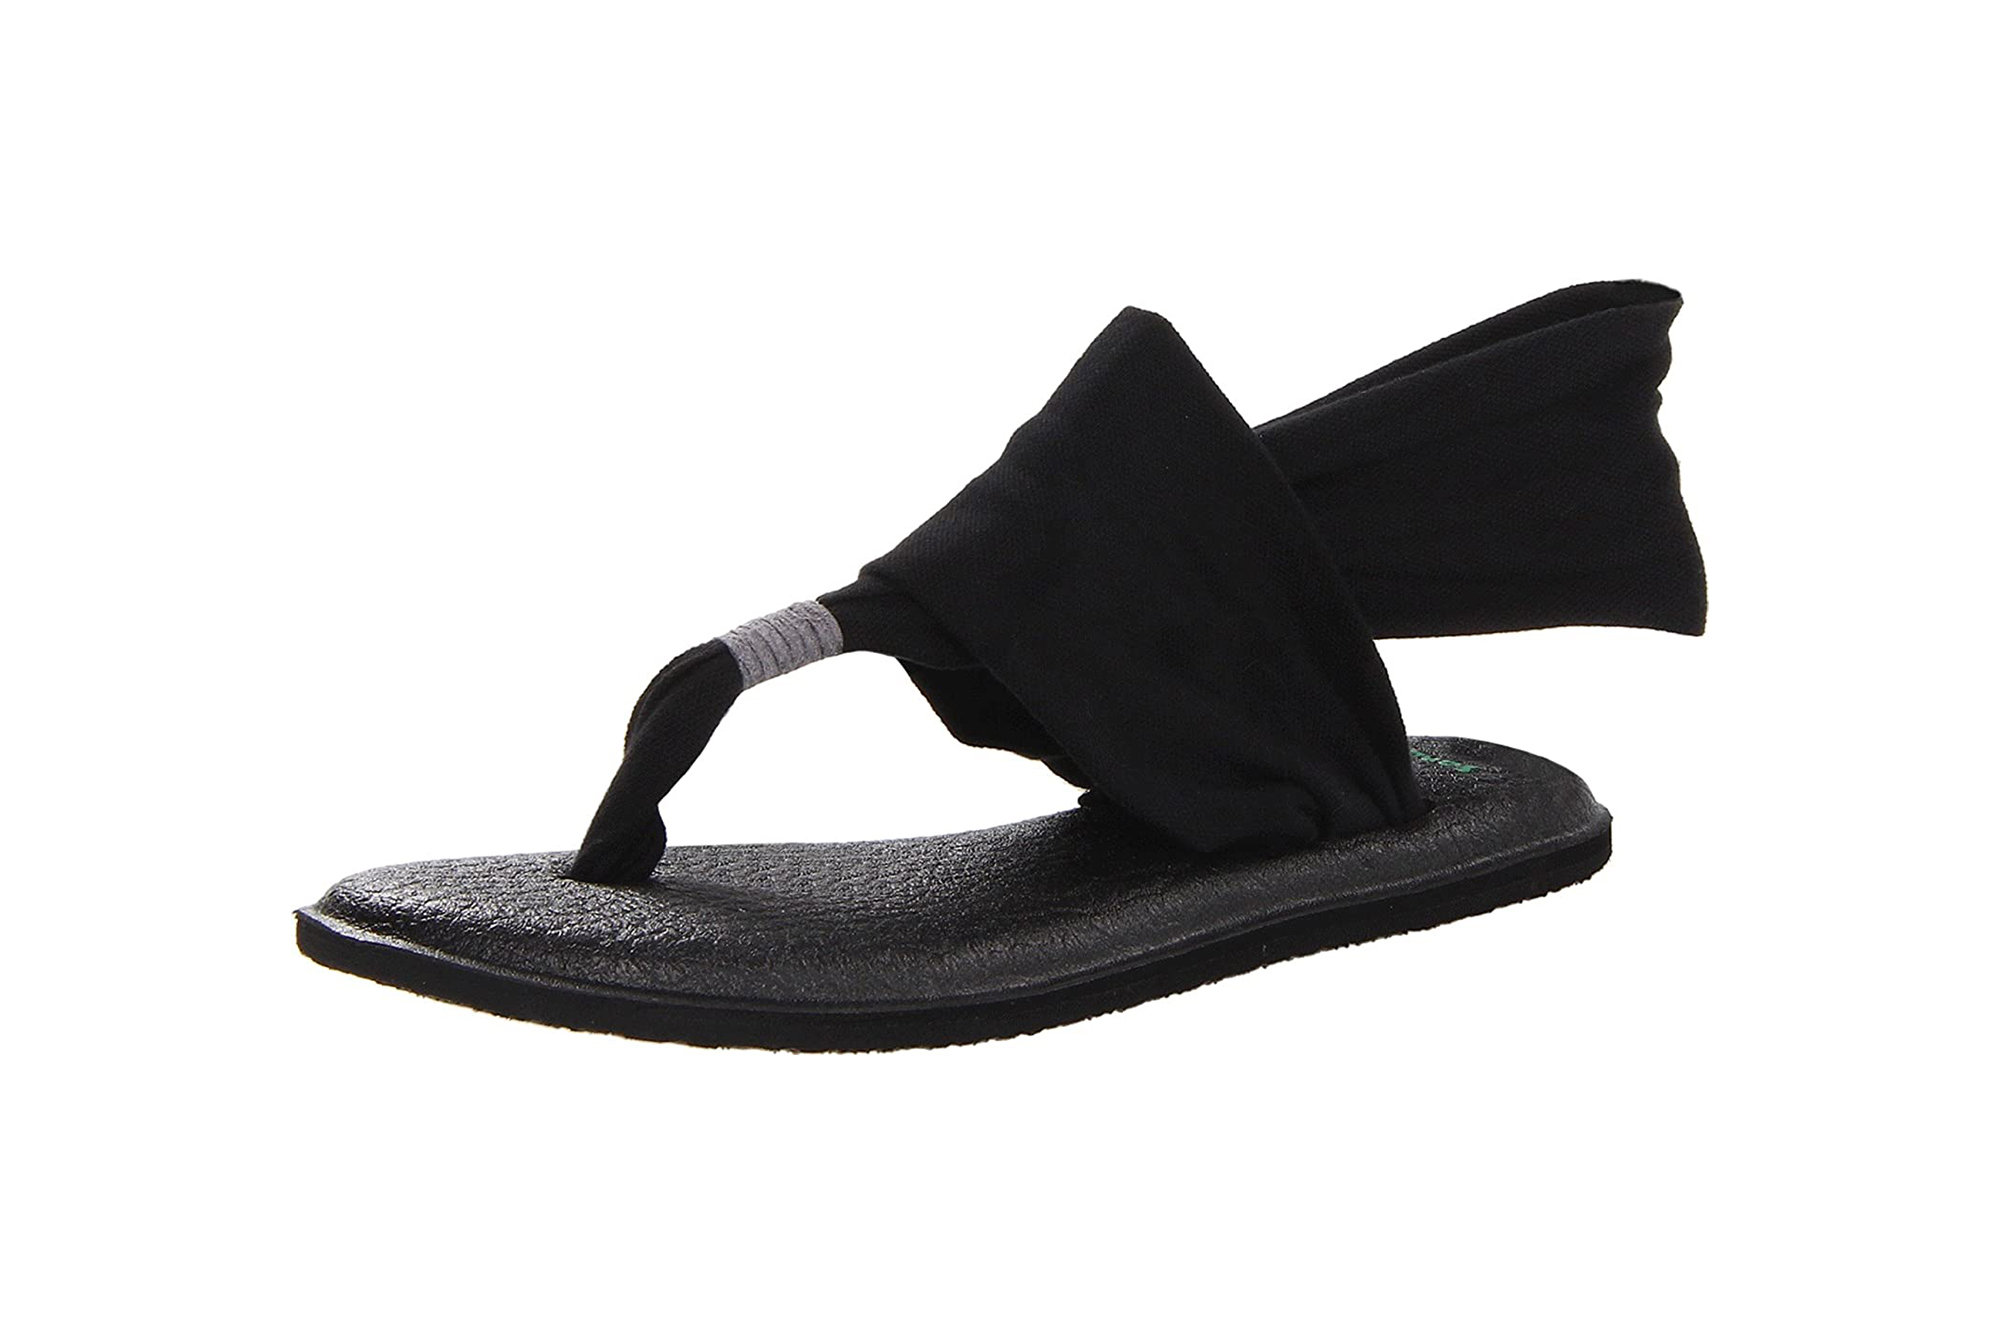 Preços baixos em Sanuk Yoga Mat chinelos para mulheres